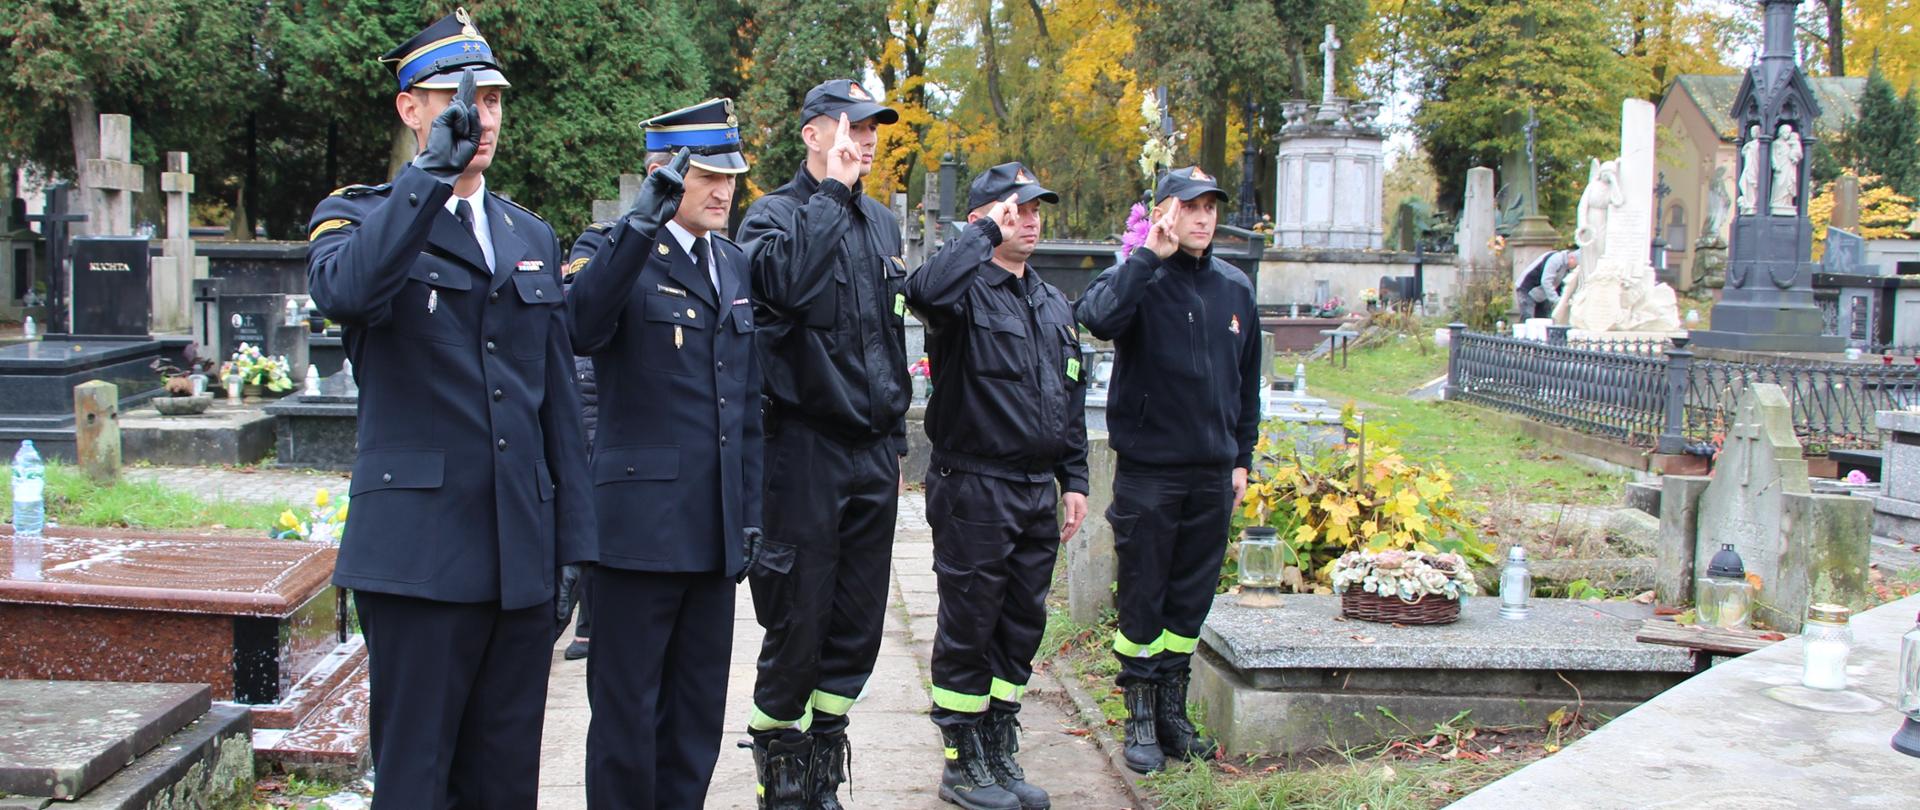 Zdjęcie przedstawia komendantów miejskich Państwowej Straży Pożarnej w Kielcach, którzy wraz z funkcjonariuszami oddają honor przy grobie zasłużonego dla ochrony przeciwpożarowej.